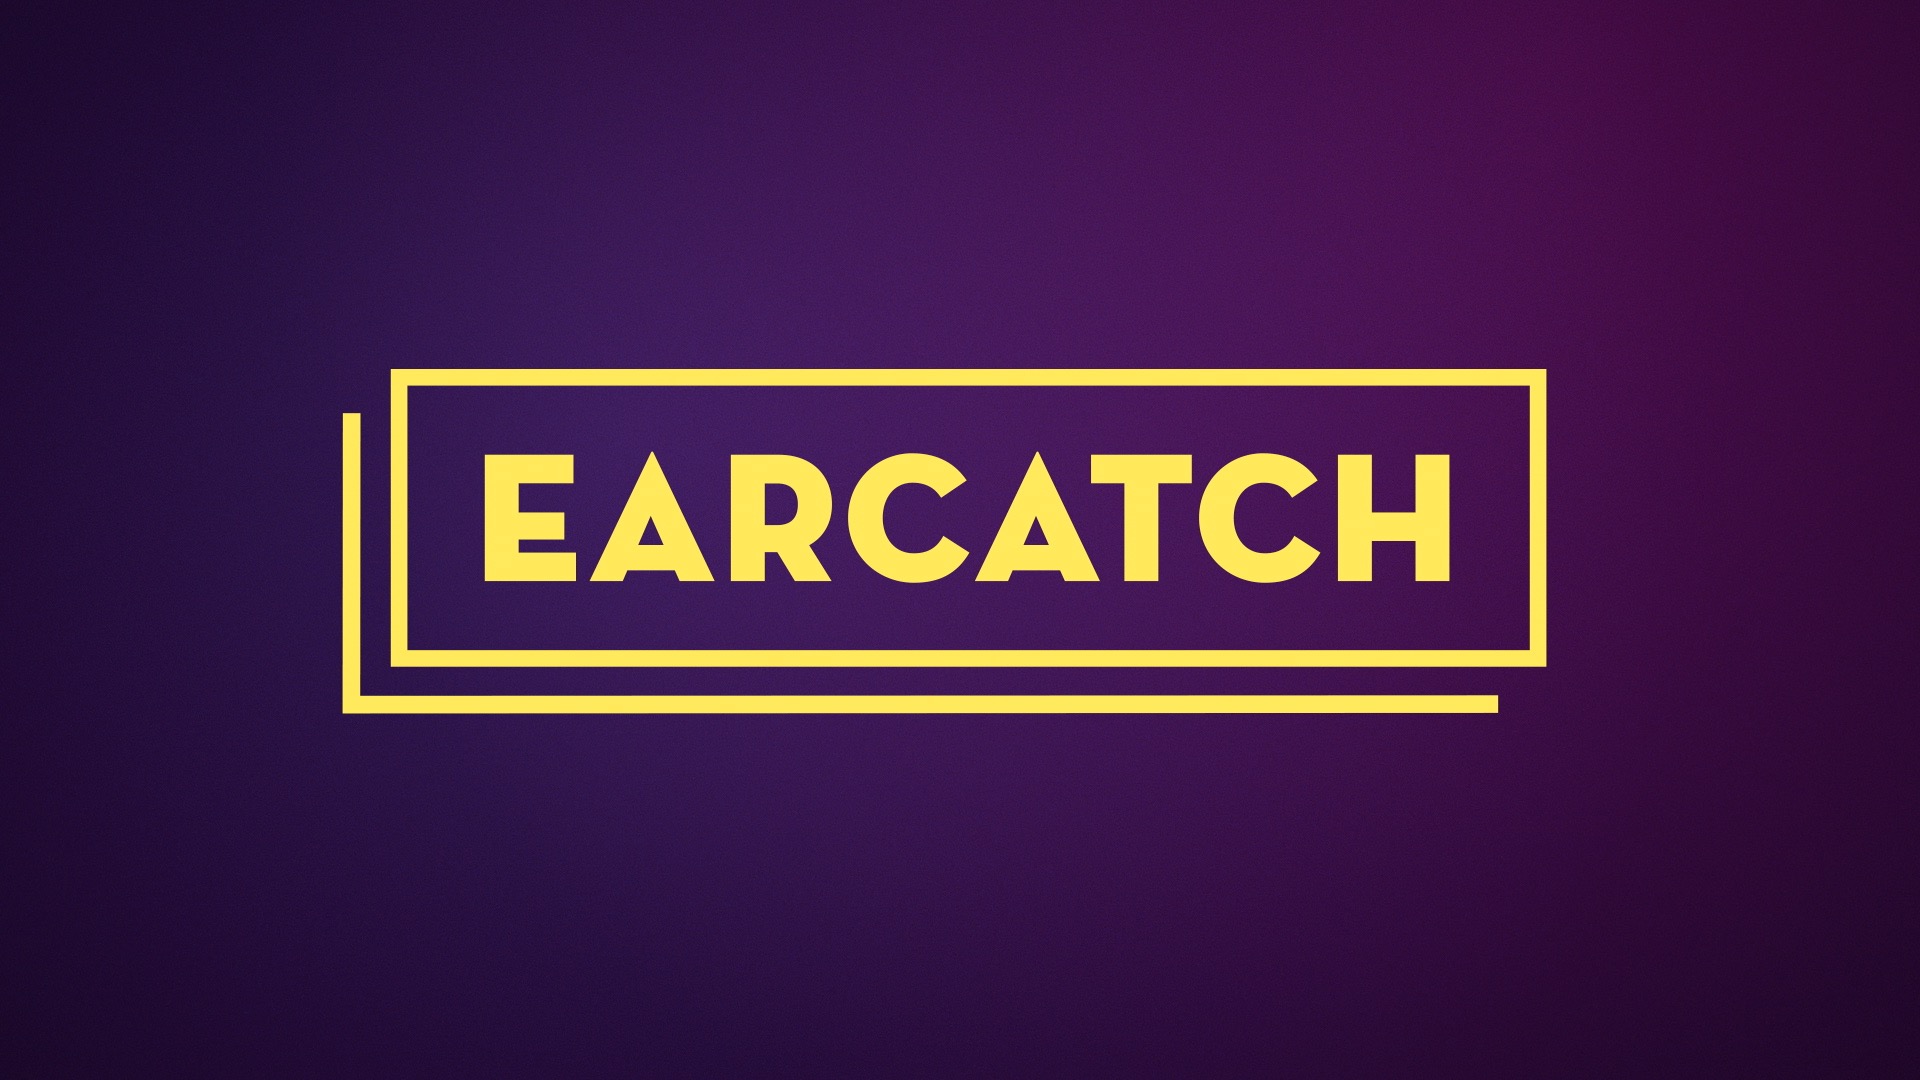 Image: Earcatch logo, written in yellow in a purple background